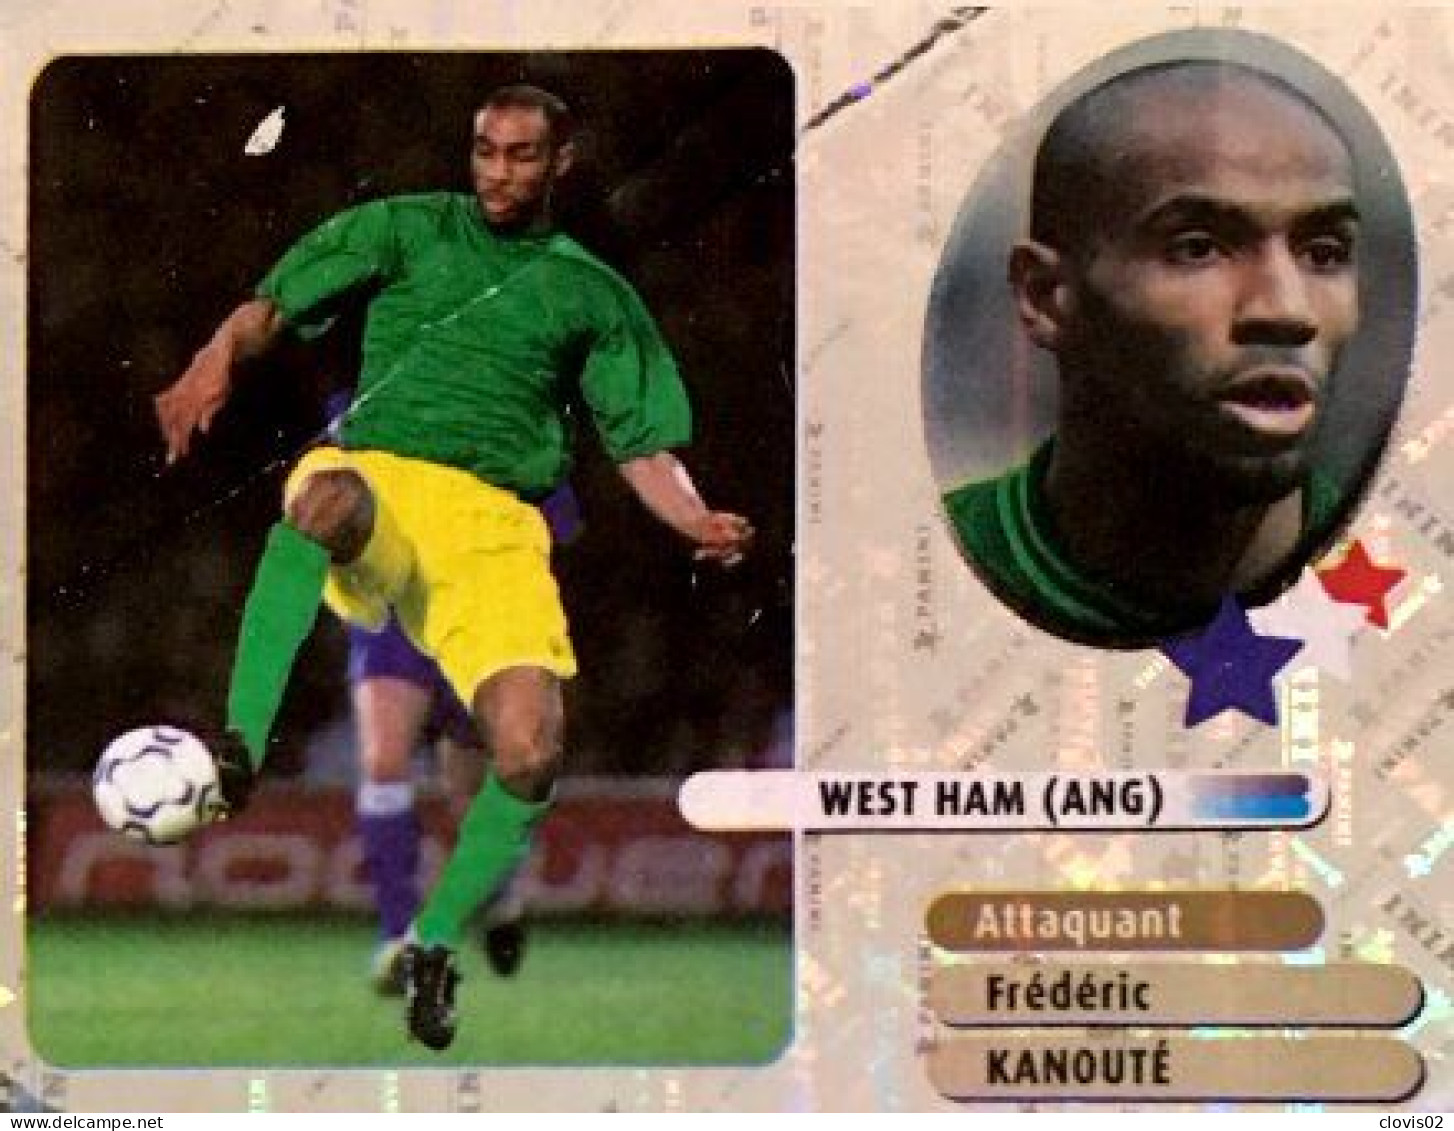 352 Frédéric Kanouté - West Ham - Stars Du Foot - Panini France Foot 2003 Sticker Vignette - Edition Française